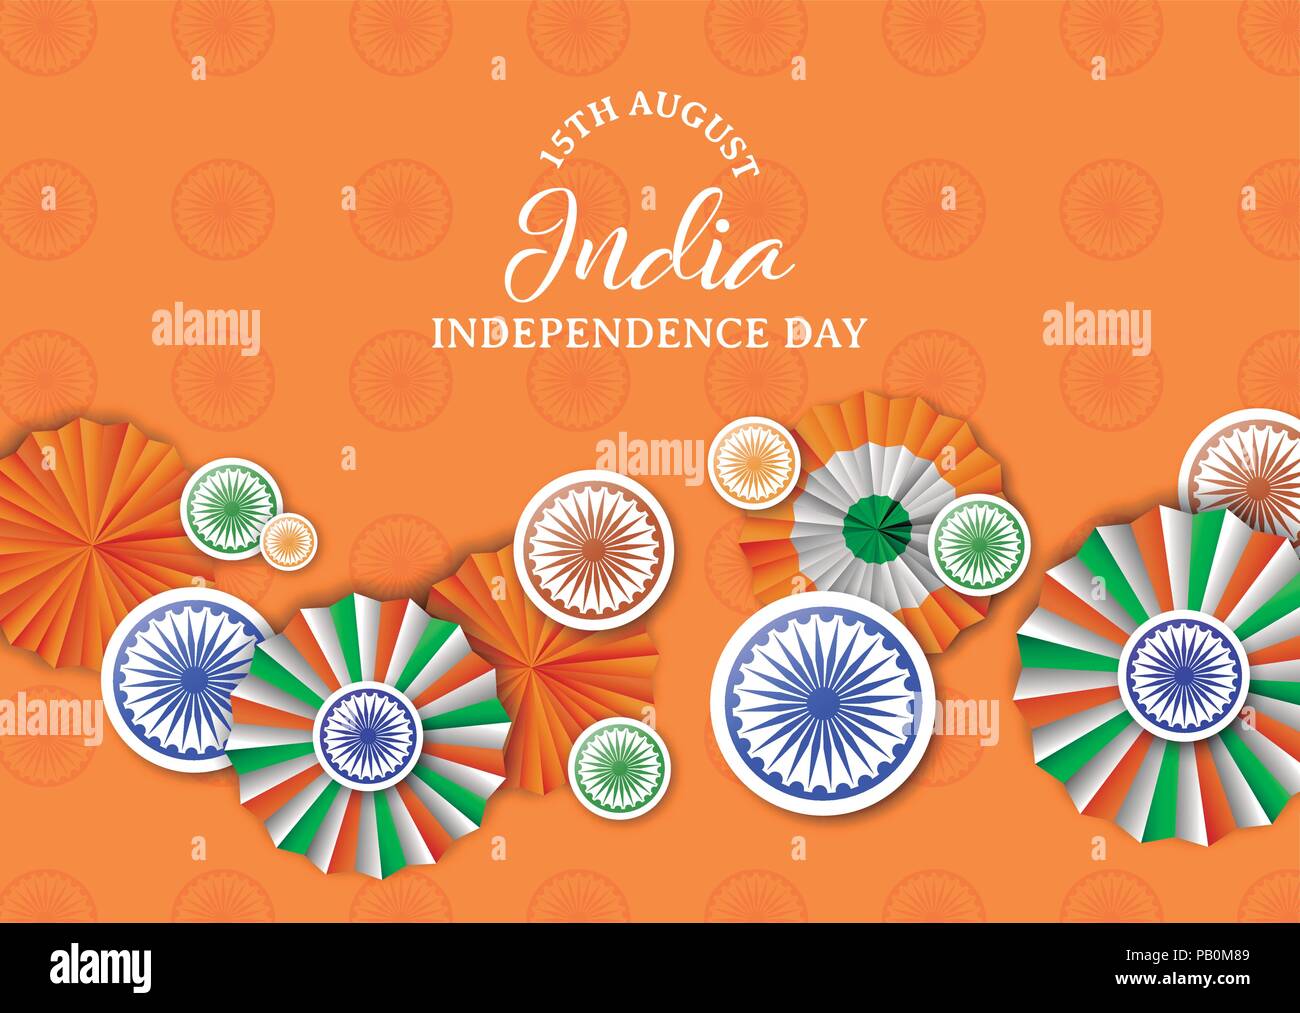 India Independence Day greeting card illustrazione. Tradizionale badge tricolore e bandiera indiana decorazione cromatica con la tipografia preventivo. EPS10 vettore. Illustrazione Vettoriale